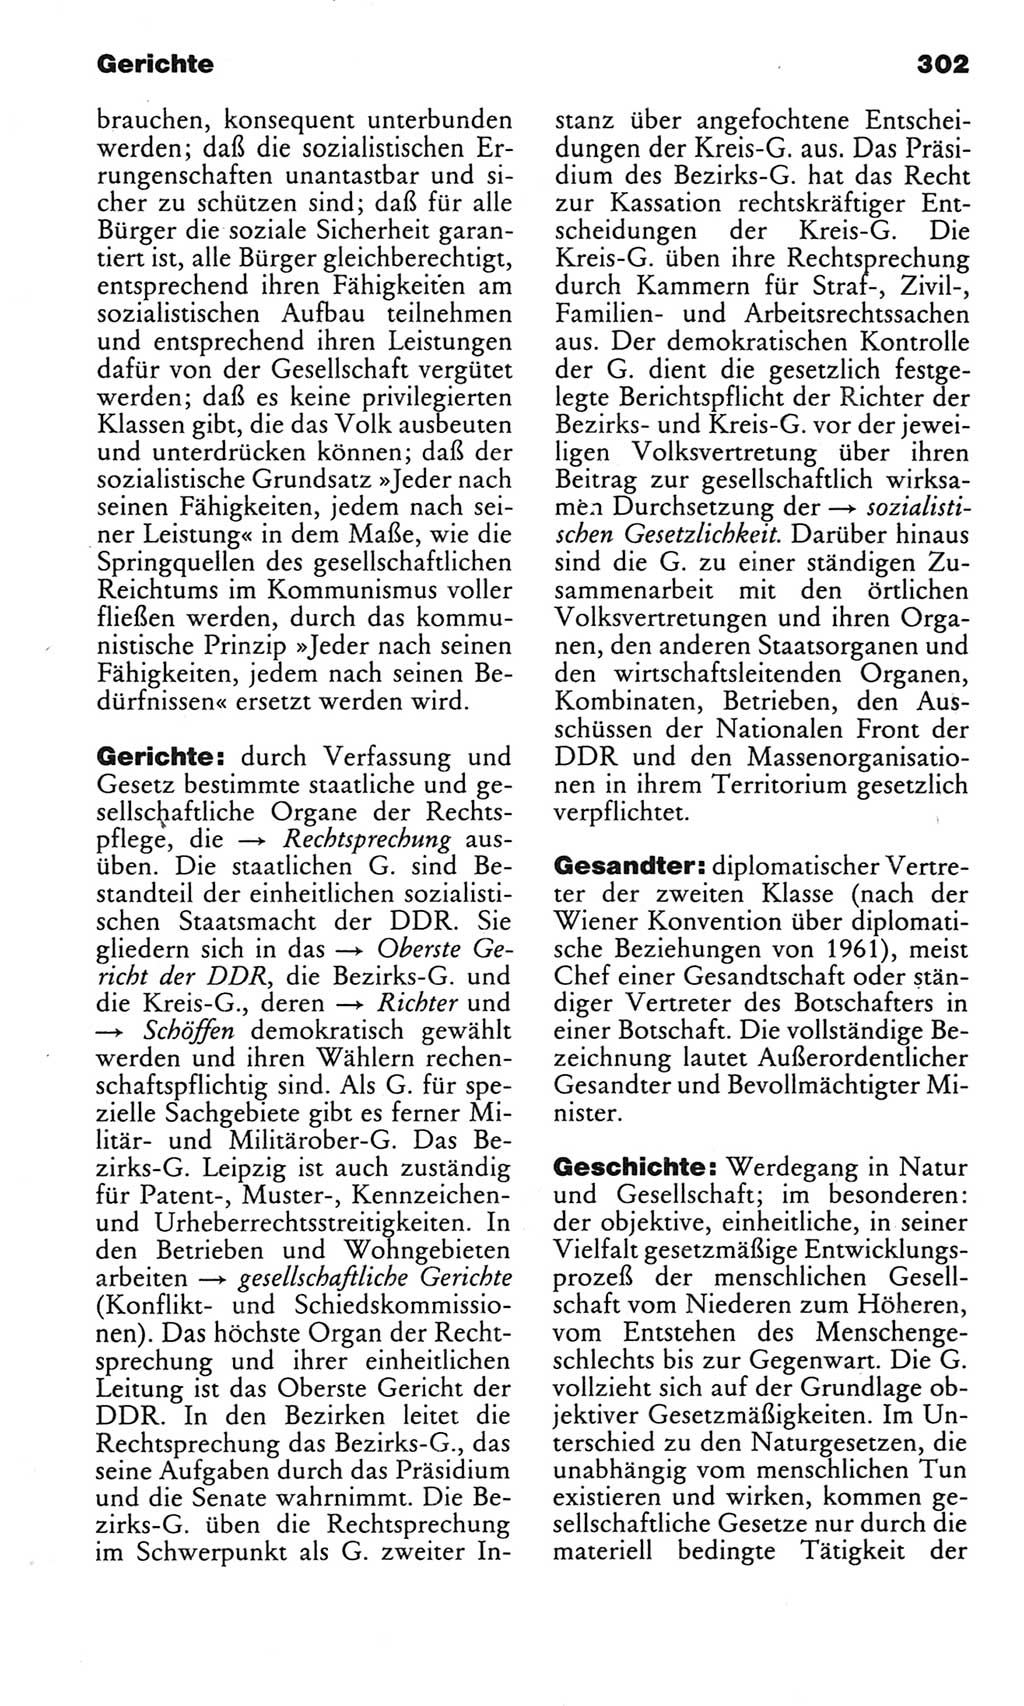 Kleines politisches Wörterbuch [Deutsche Demokratische Republik (DDR)] 1983, Seite 302 (Kl. pol. Wb. DDR 1983, S. 302)